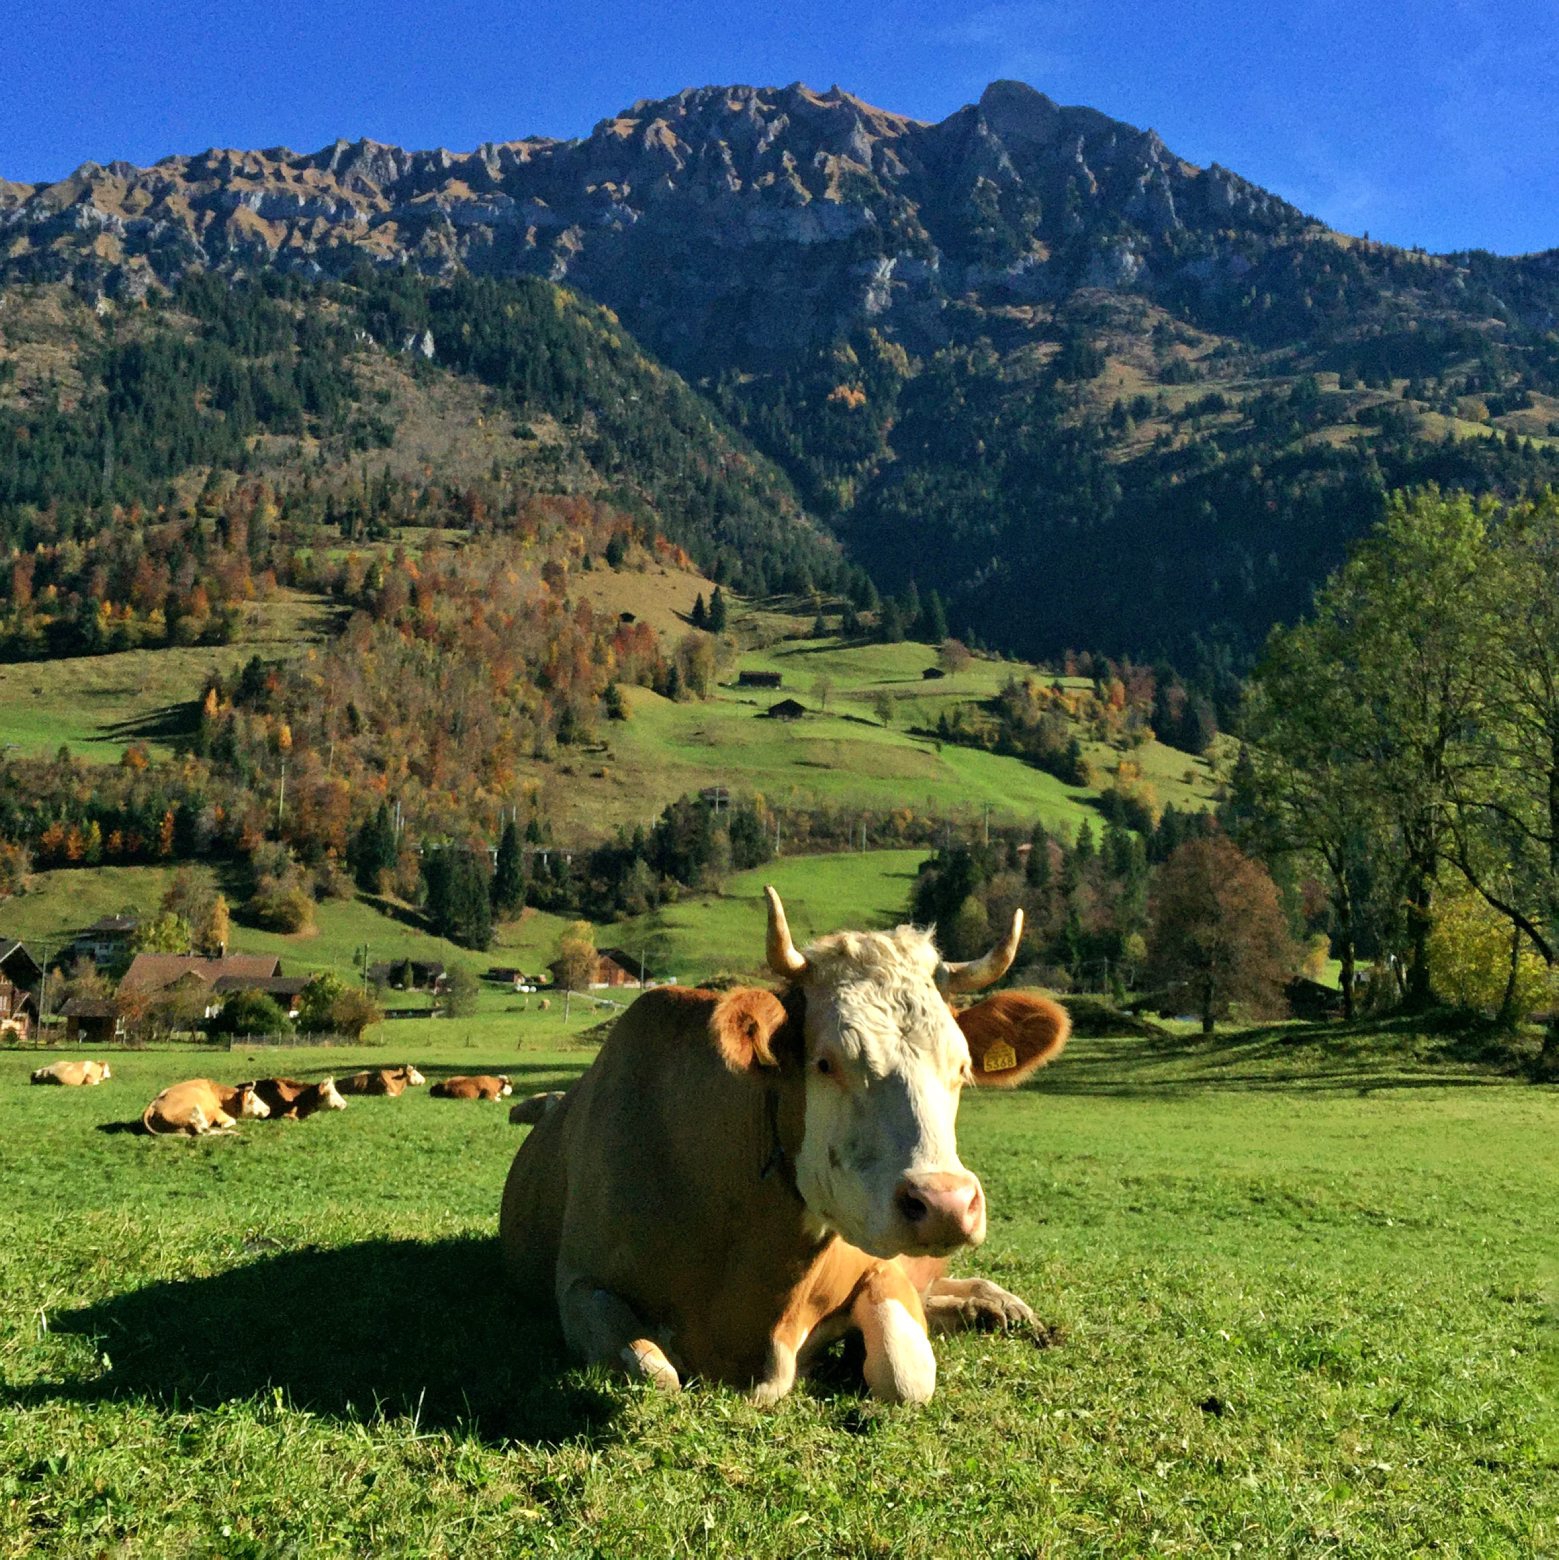 Vache avec des cornes.
Photo Lib/Alain Wicht, Kandergrund, le 29.10.2016 Vache avec des cornes